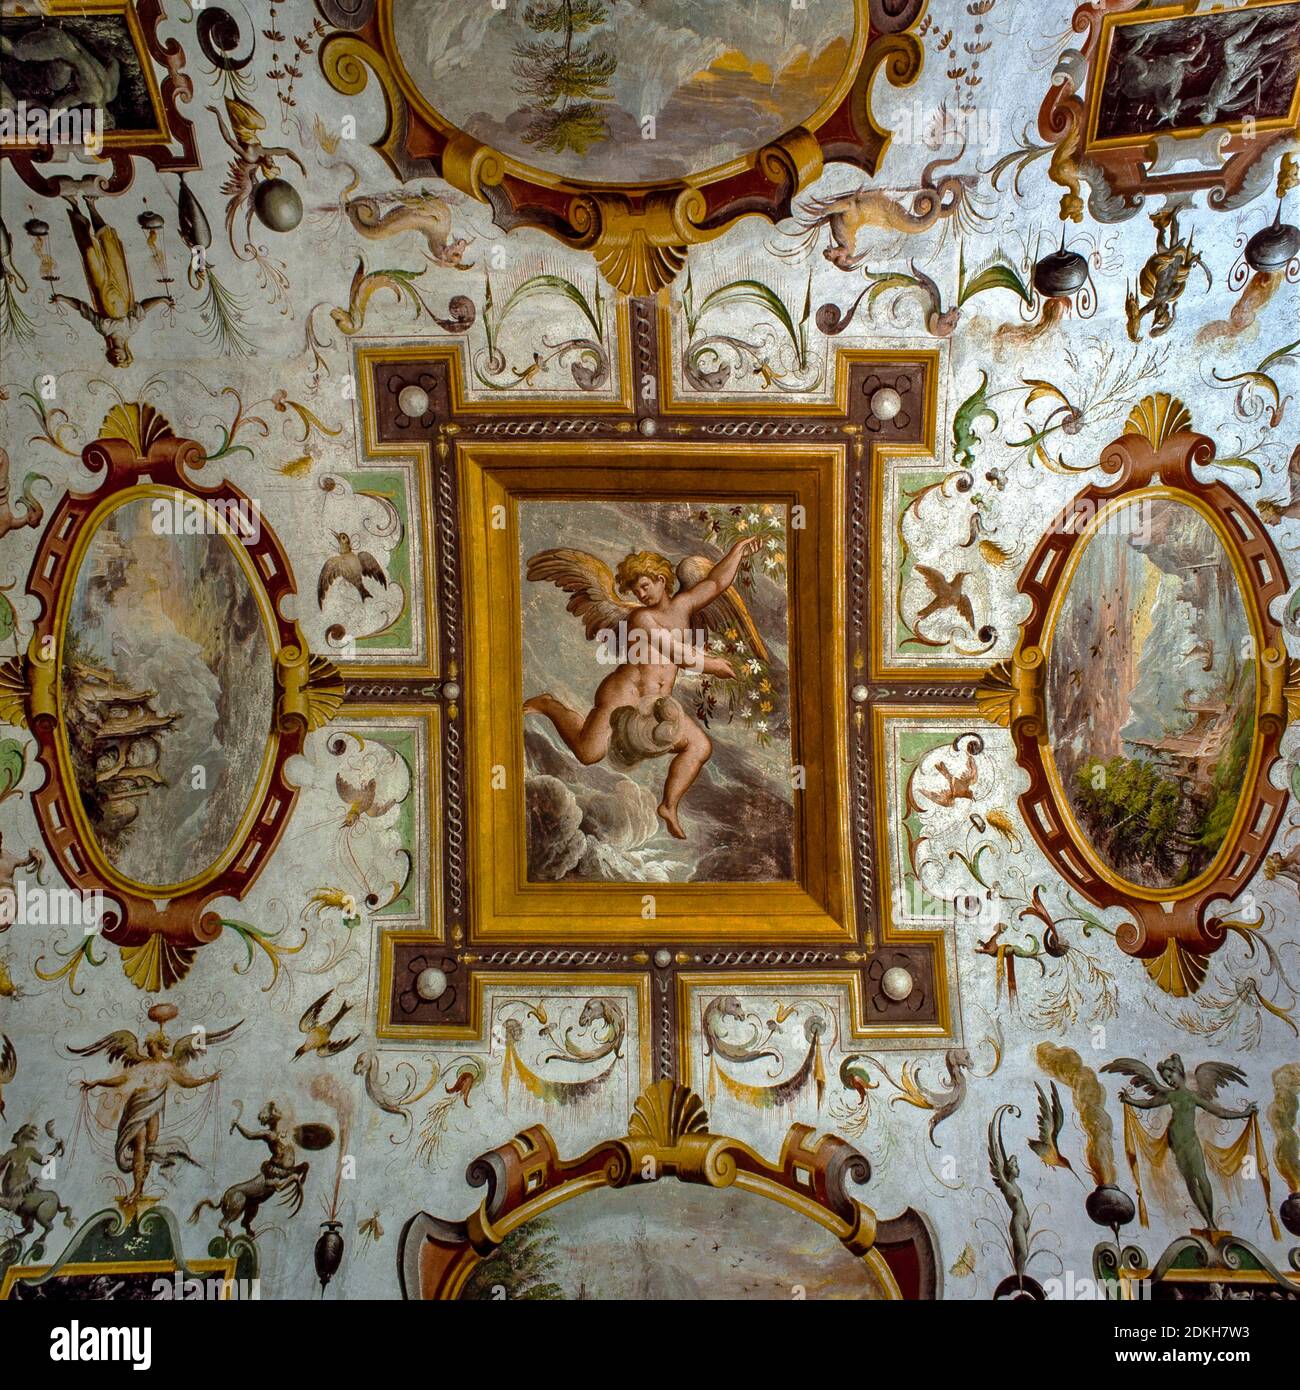 Castello rinascimentale italiano di Torrechiara. Cesare Baglione 1550 - 1615. Titolo dell'opera. Sala grottesca affrescata Sala dei Paesaggi primi del 17 ° secolo. Foto Stock